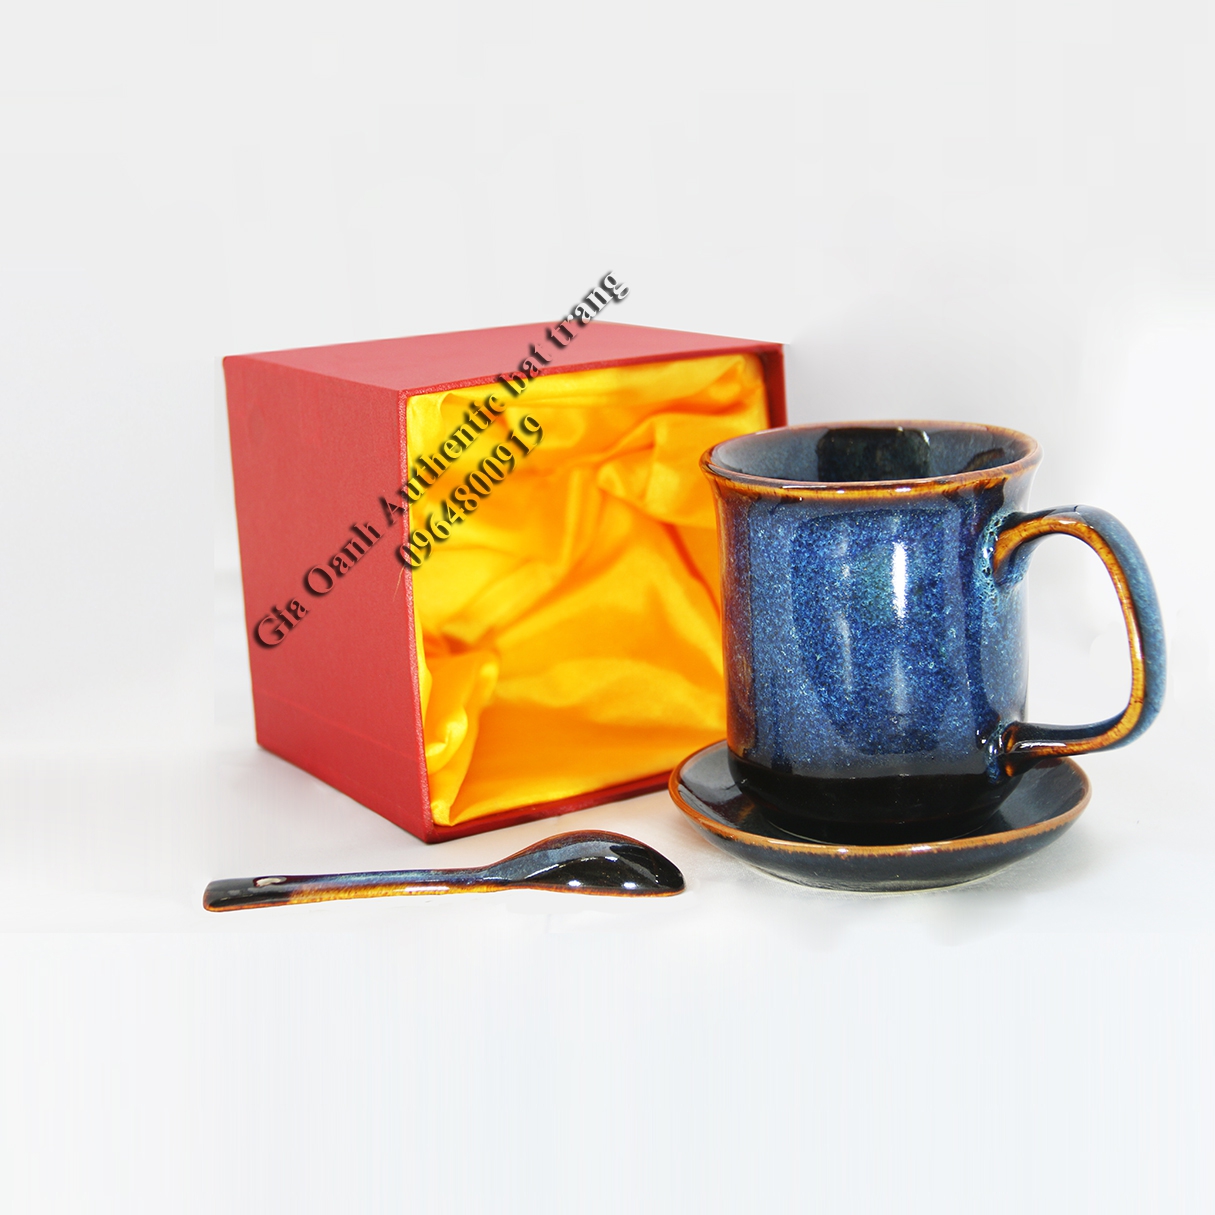 Tea cups gift set - Bộ quà tặng  cốc uống trà, uống nước - quà tặng cho ngày tết - năm mới -, quà tặng gia đình và bạn bề độc đáo và đẳng cấp - sản phẩm gốm sứ gia oanh authentic bat trang